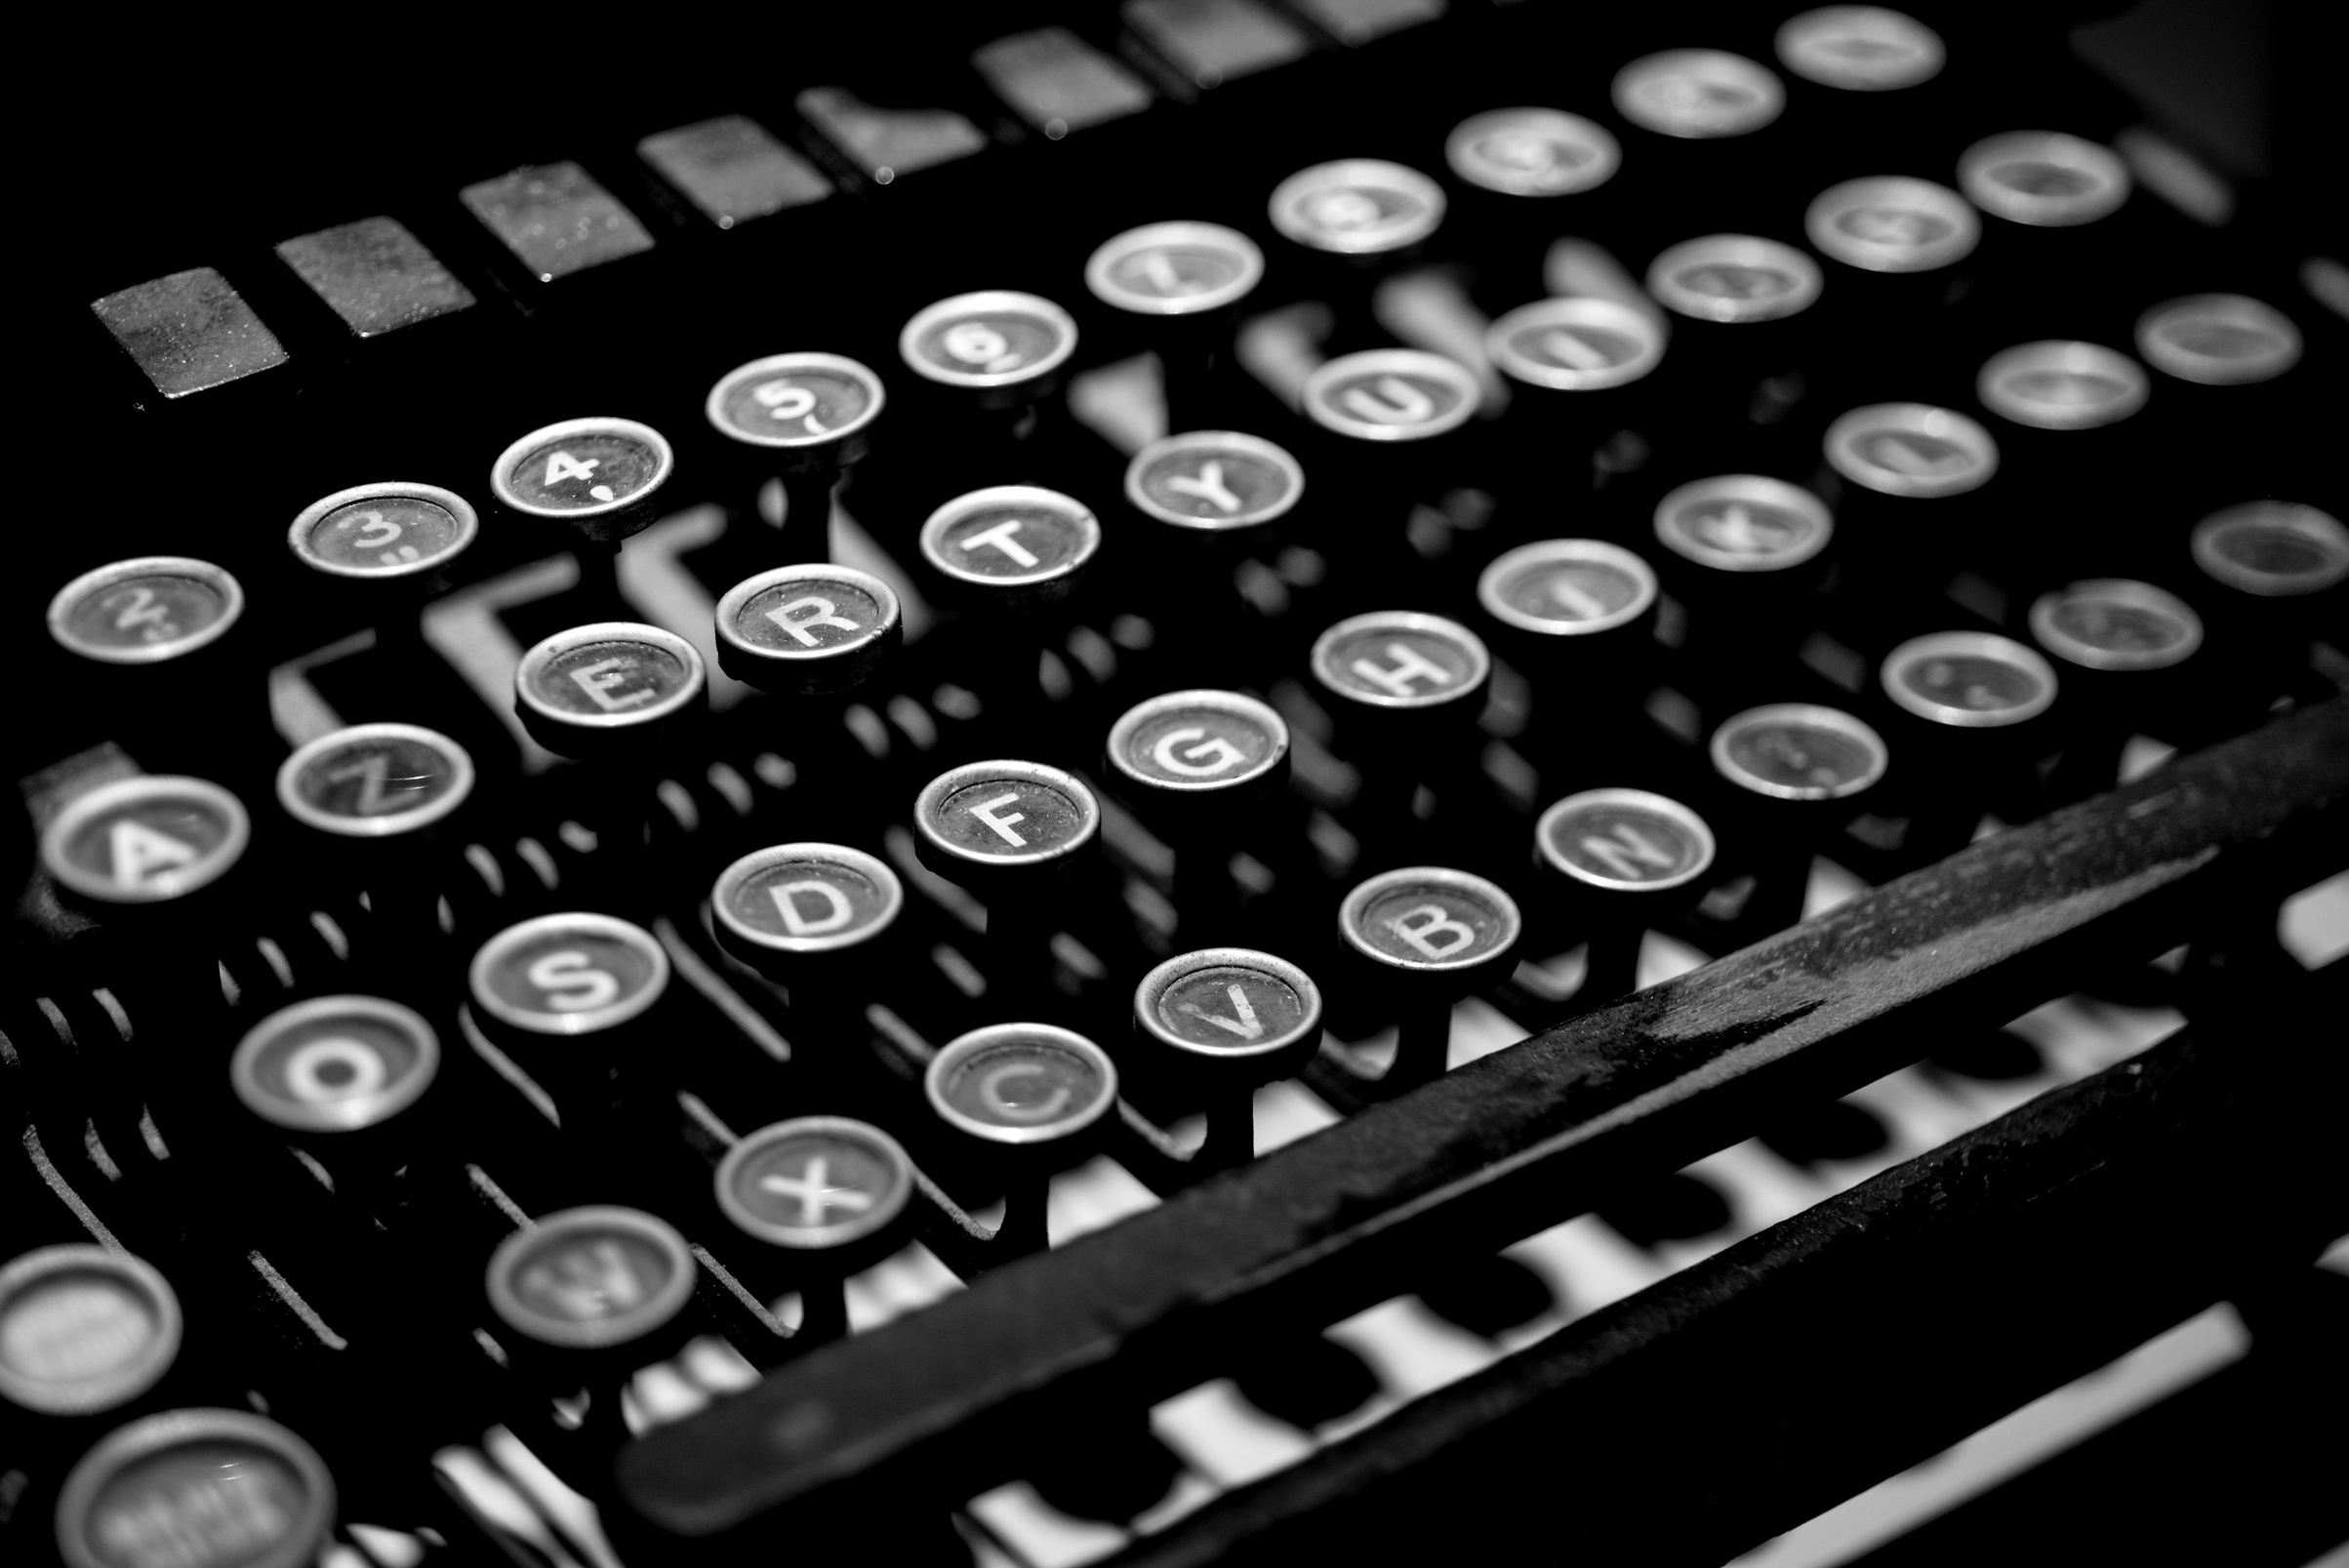 Antique Typewriter Machine